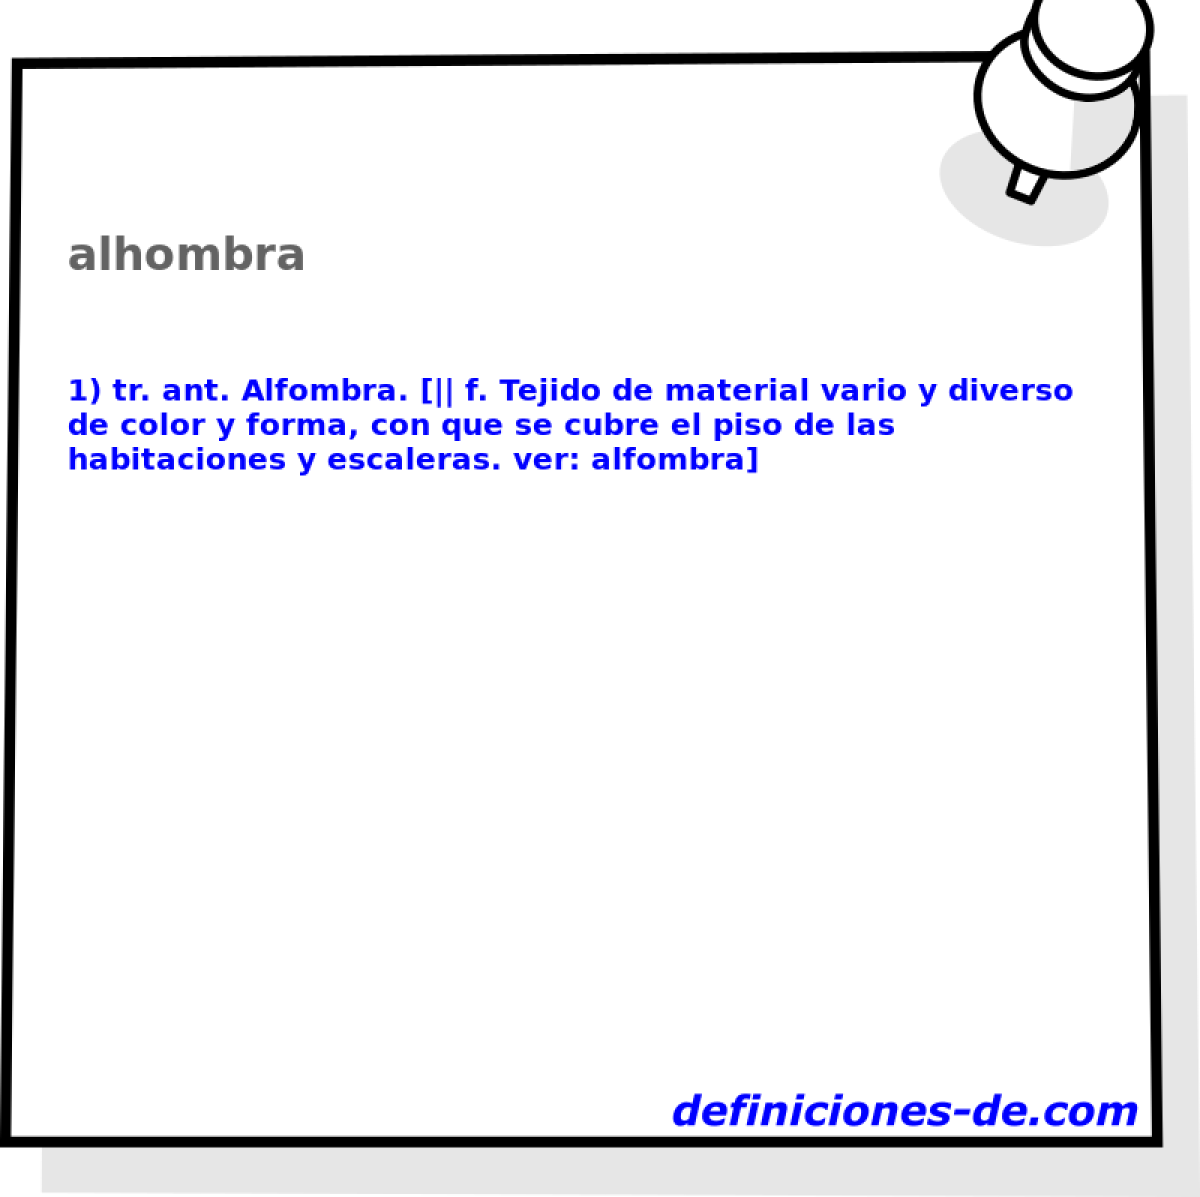 alhombra 